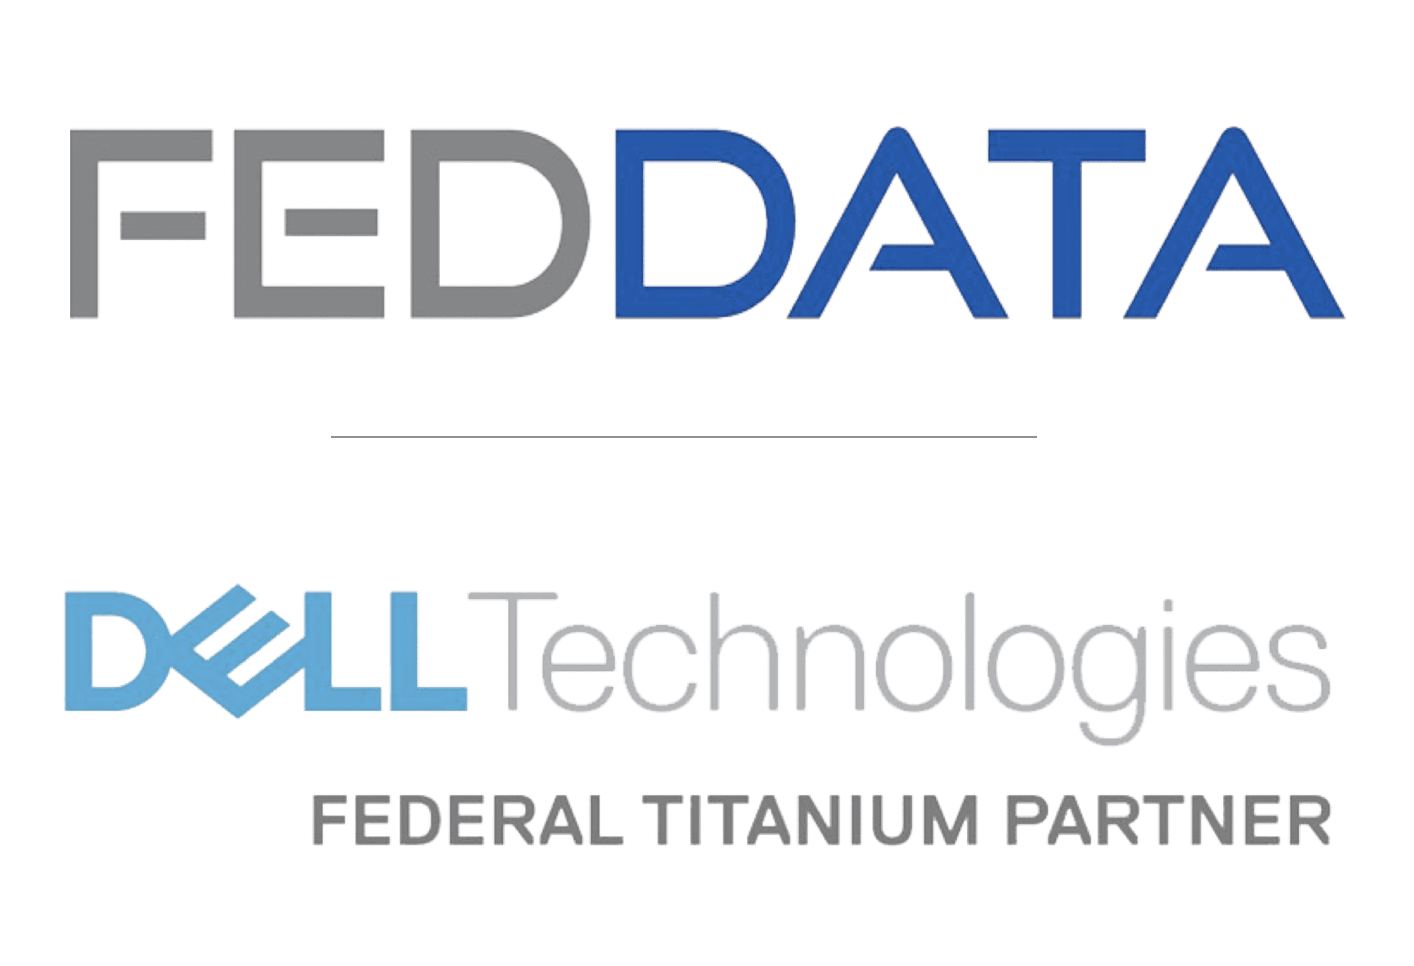 FEDDATA & Dell Technologies - Bar Sponsor